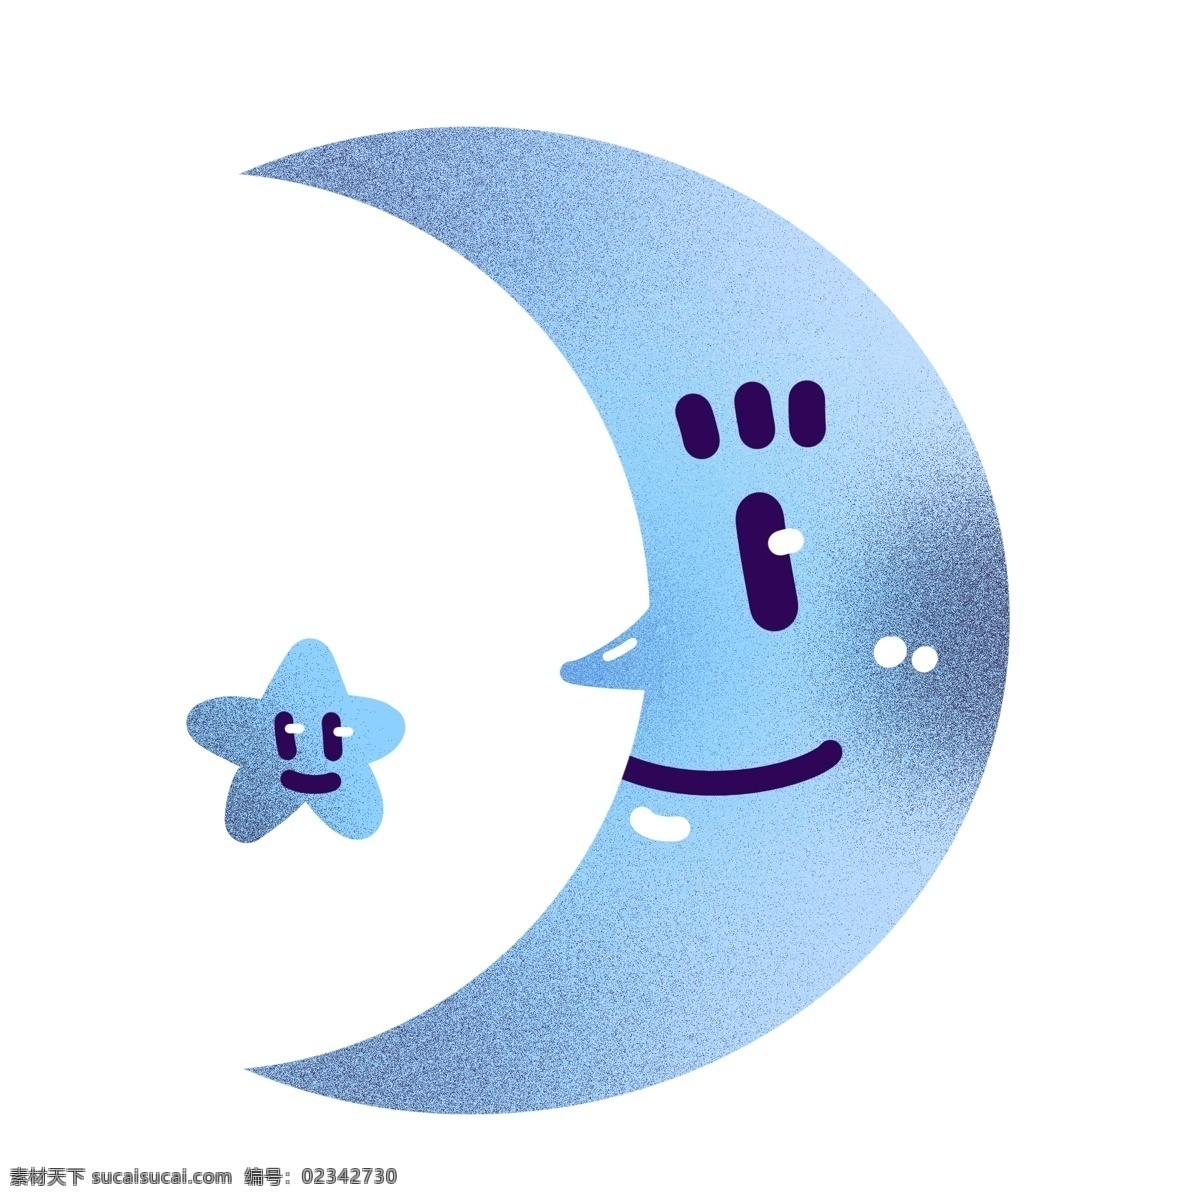 日月星辰 可爱 卡通 行星 月亮 蓝月亮 月食 星象 天体